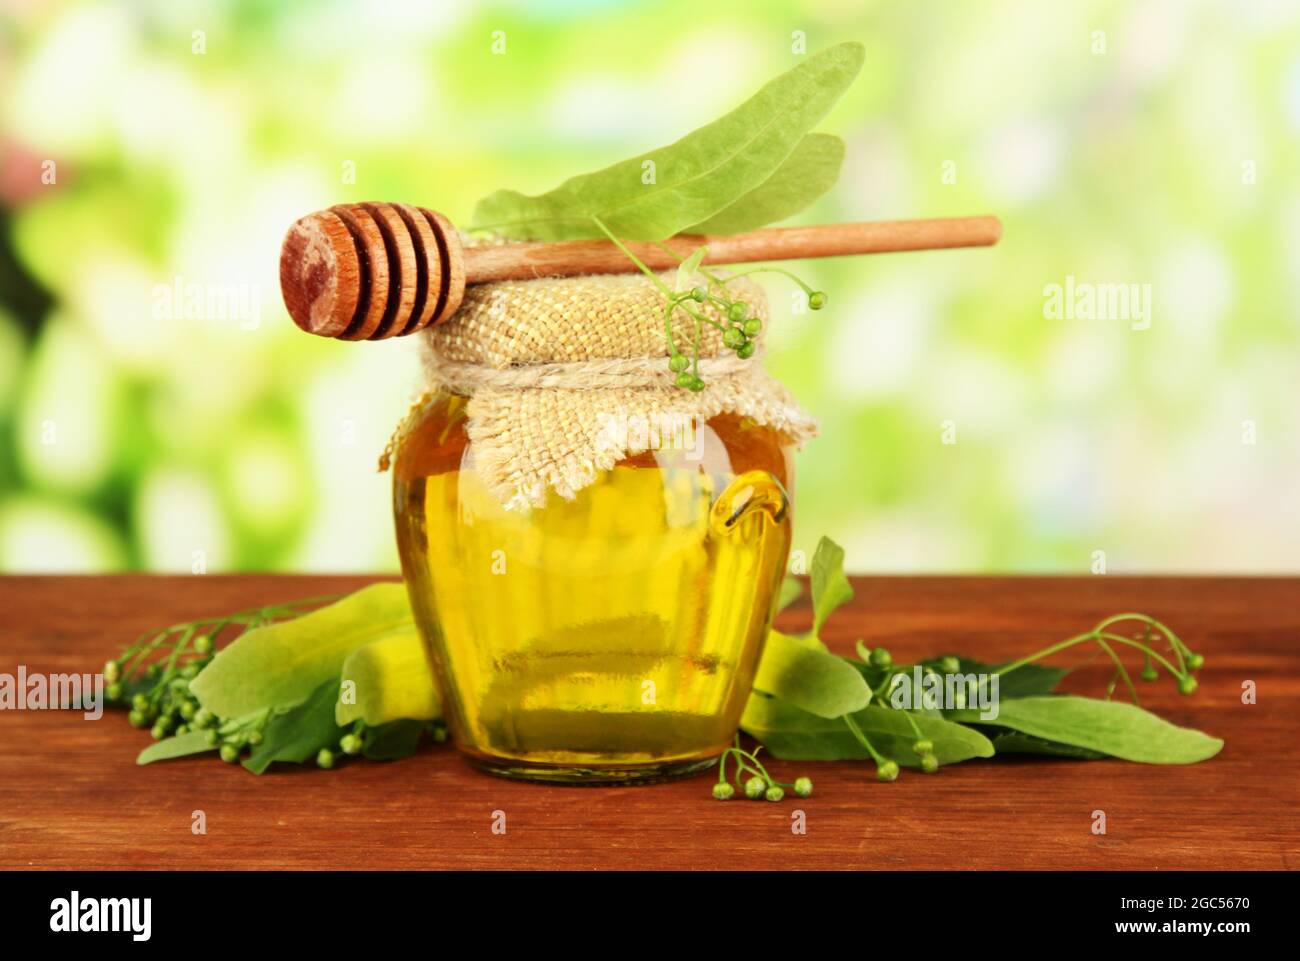 Krug Honig mit Blumen von Kalk, auf Holztisch auf hellen Hintergrund  Stockfotografie - Alamy